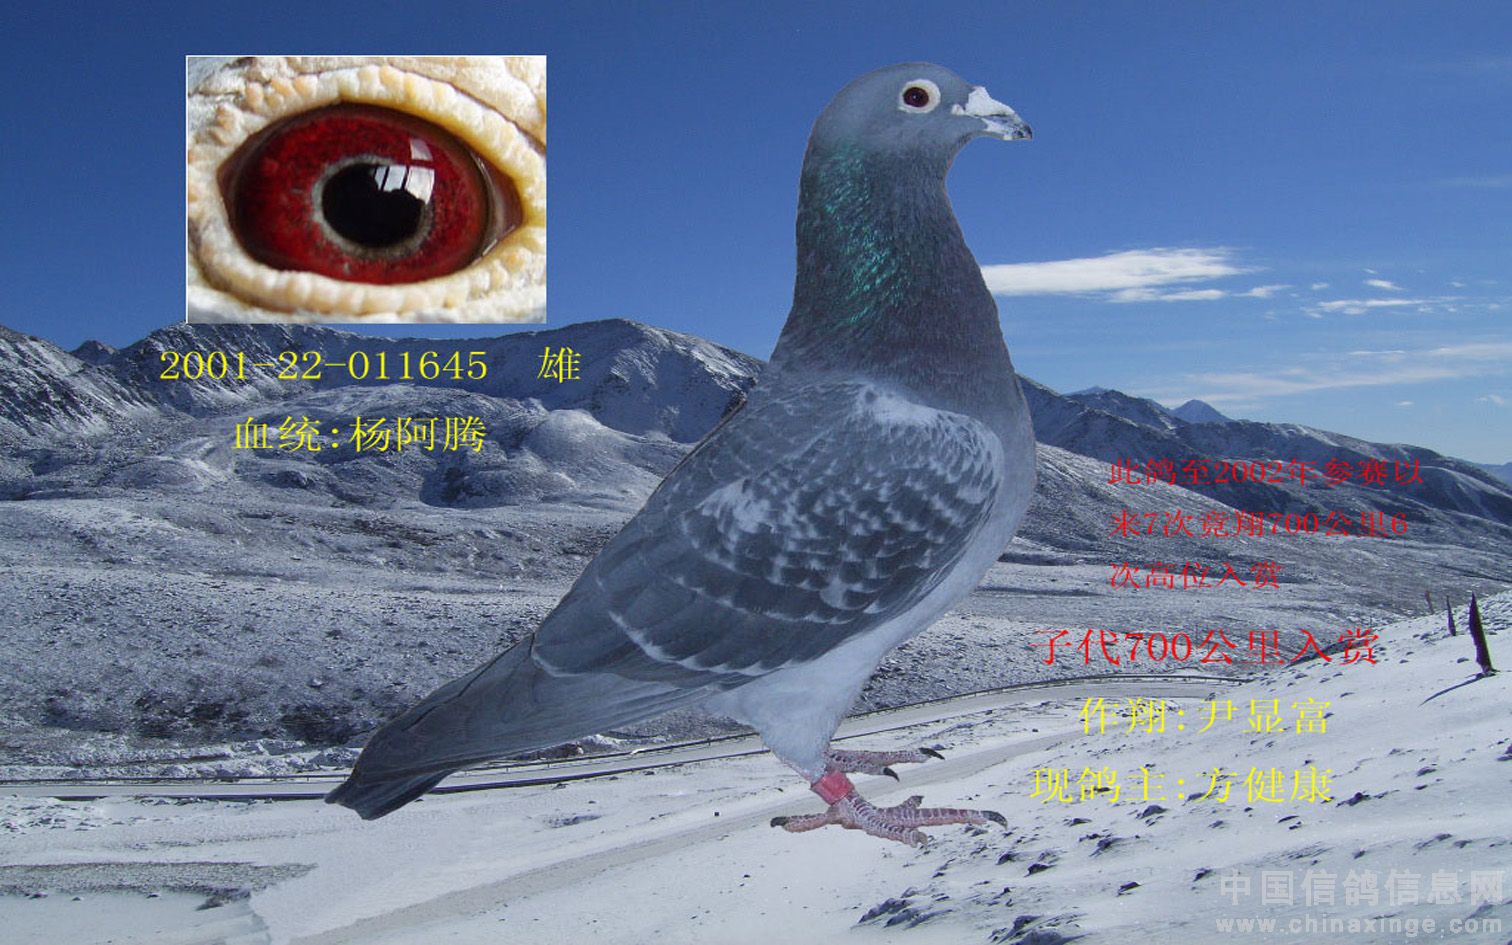 十六幅超级鸽眼的详解-中信网信鸽园地